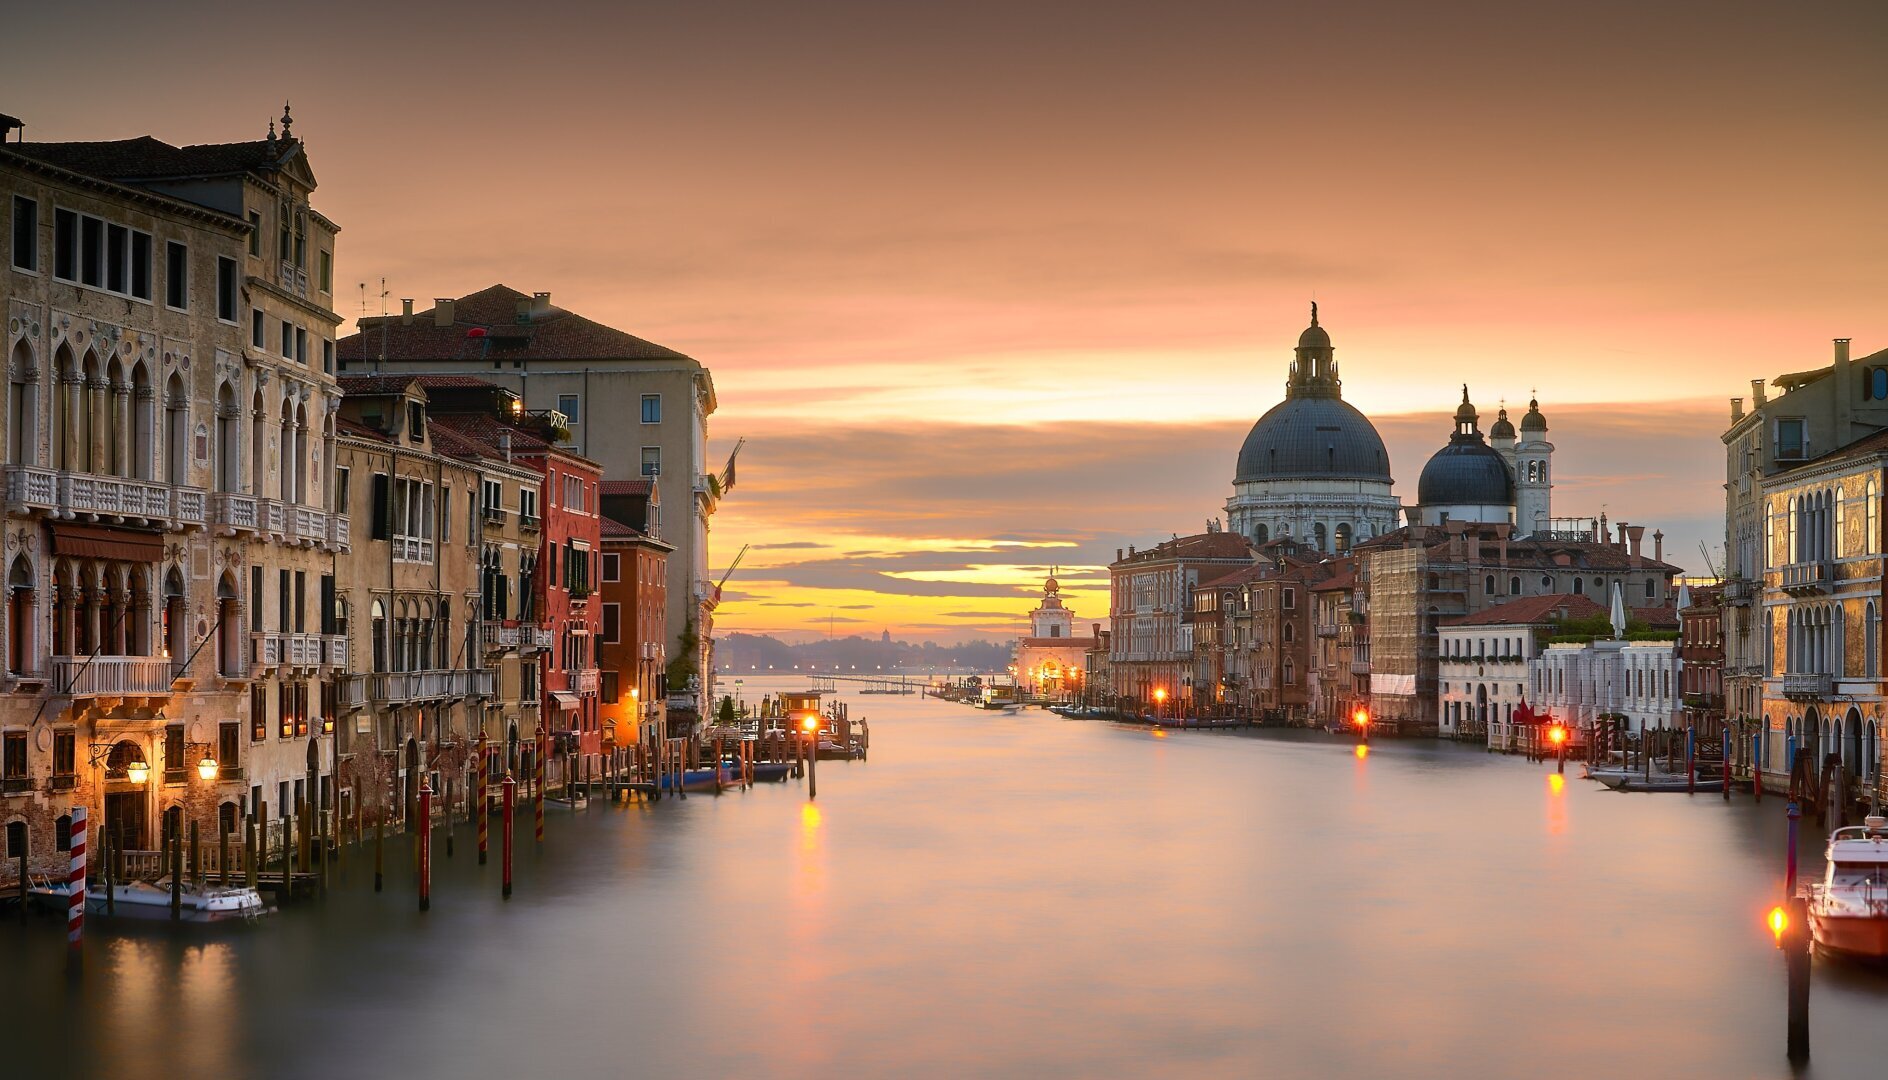 Гранд канал в венеции фото